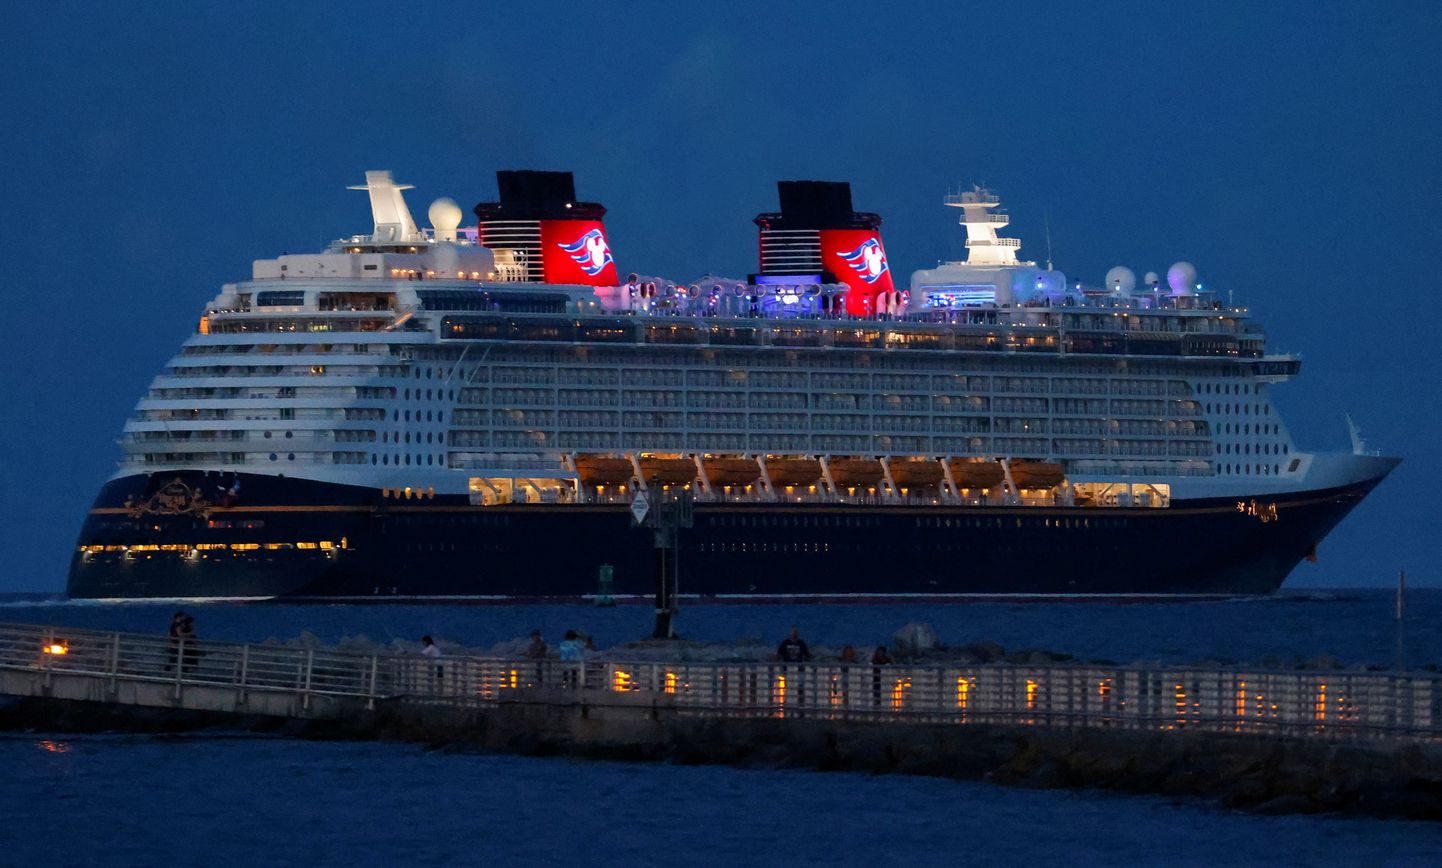 Esmakordselt pärast koroonat: Disney Cruise Lines laev Disney Dream väljus Port Canaverali sadamast Floridas ning võttis suuna Bahamale.